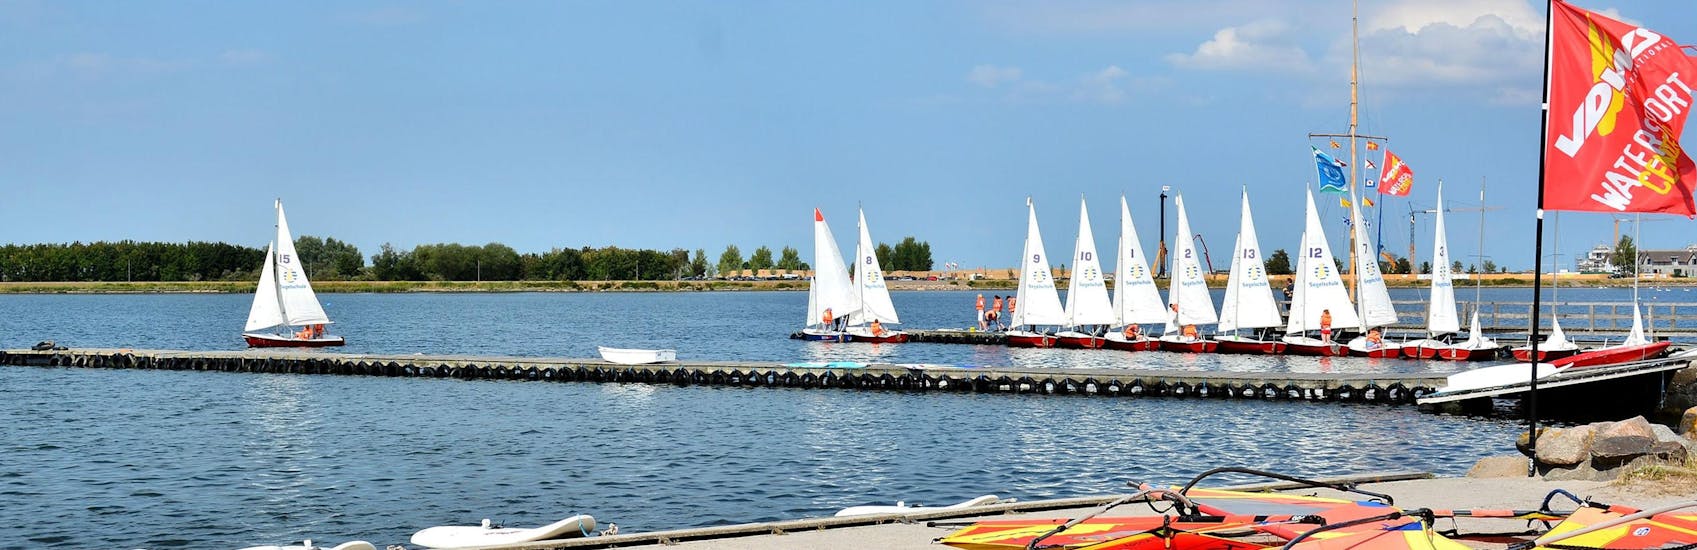 Ein Blick auf den See mit mehreren Booten während des Windsurfingkurses für Fortgeschrittene - Heiligenhafen mit dem Wassersportcenter Heiligenhafen.